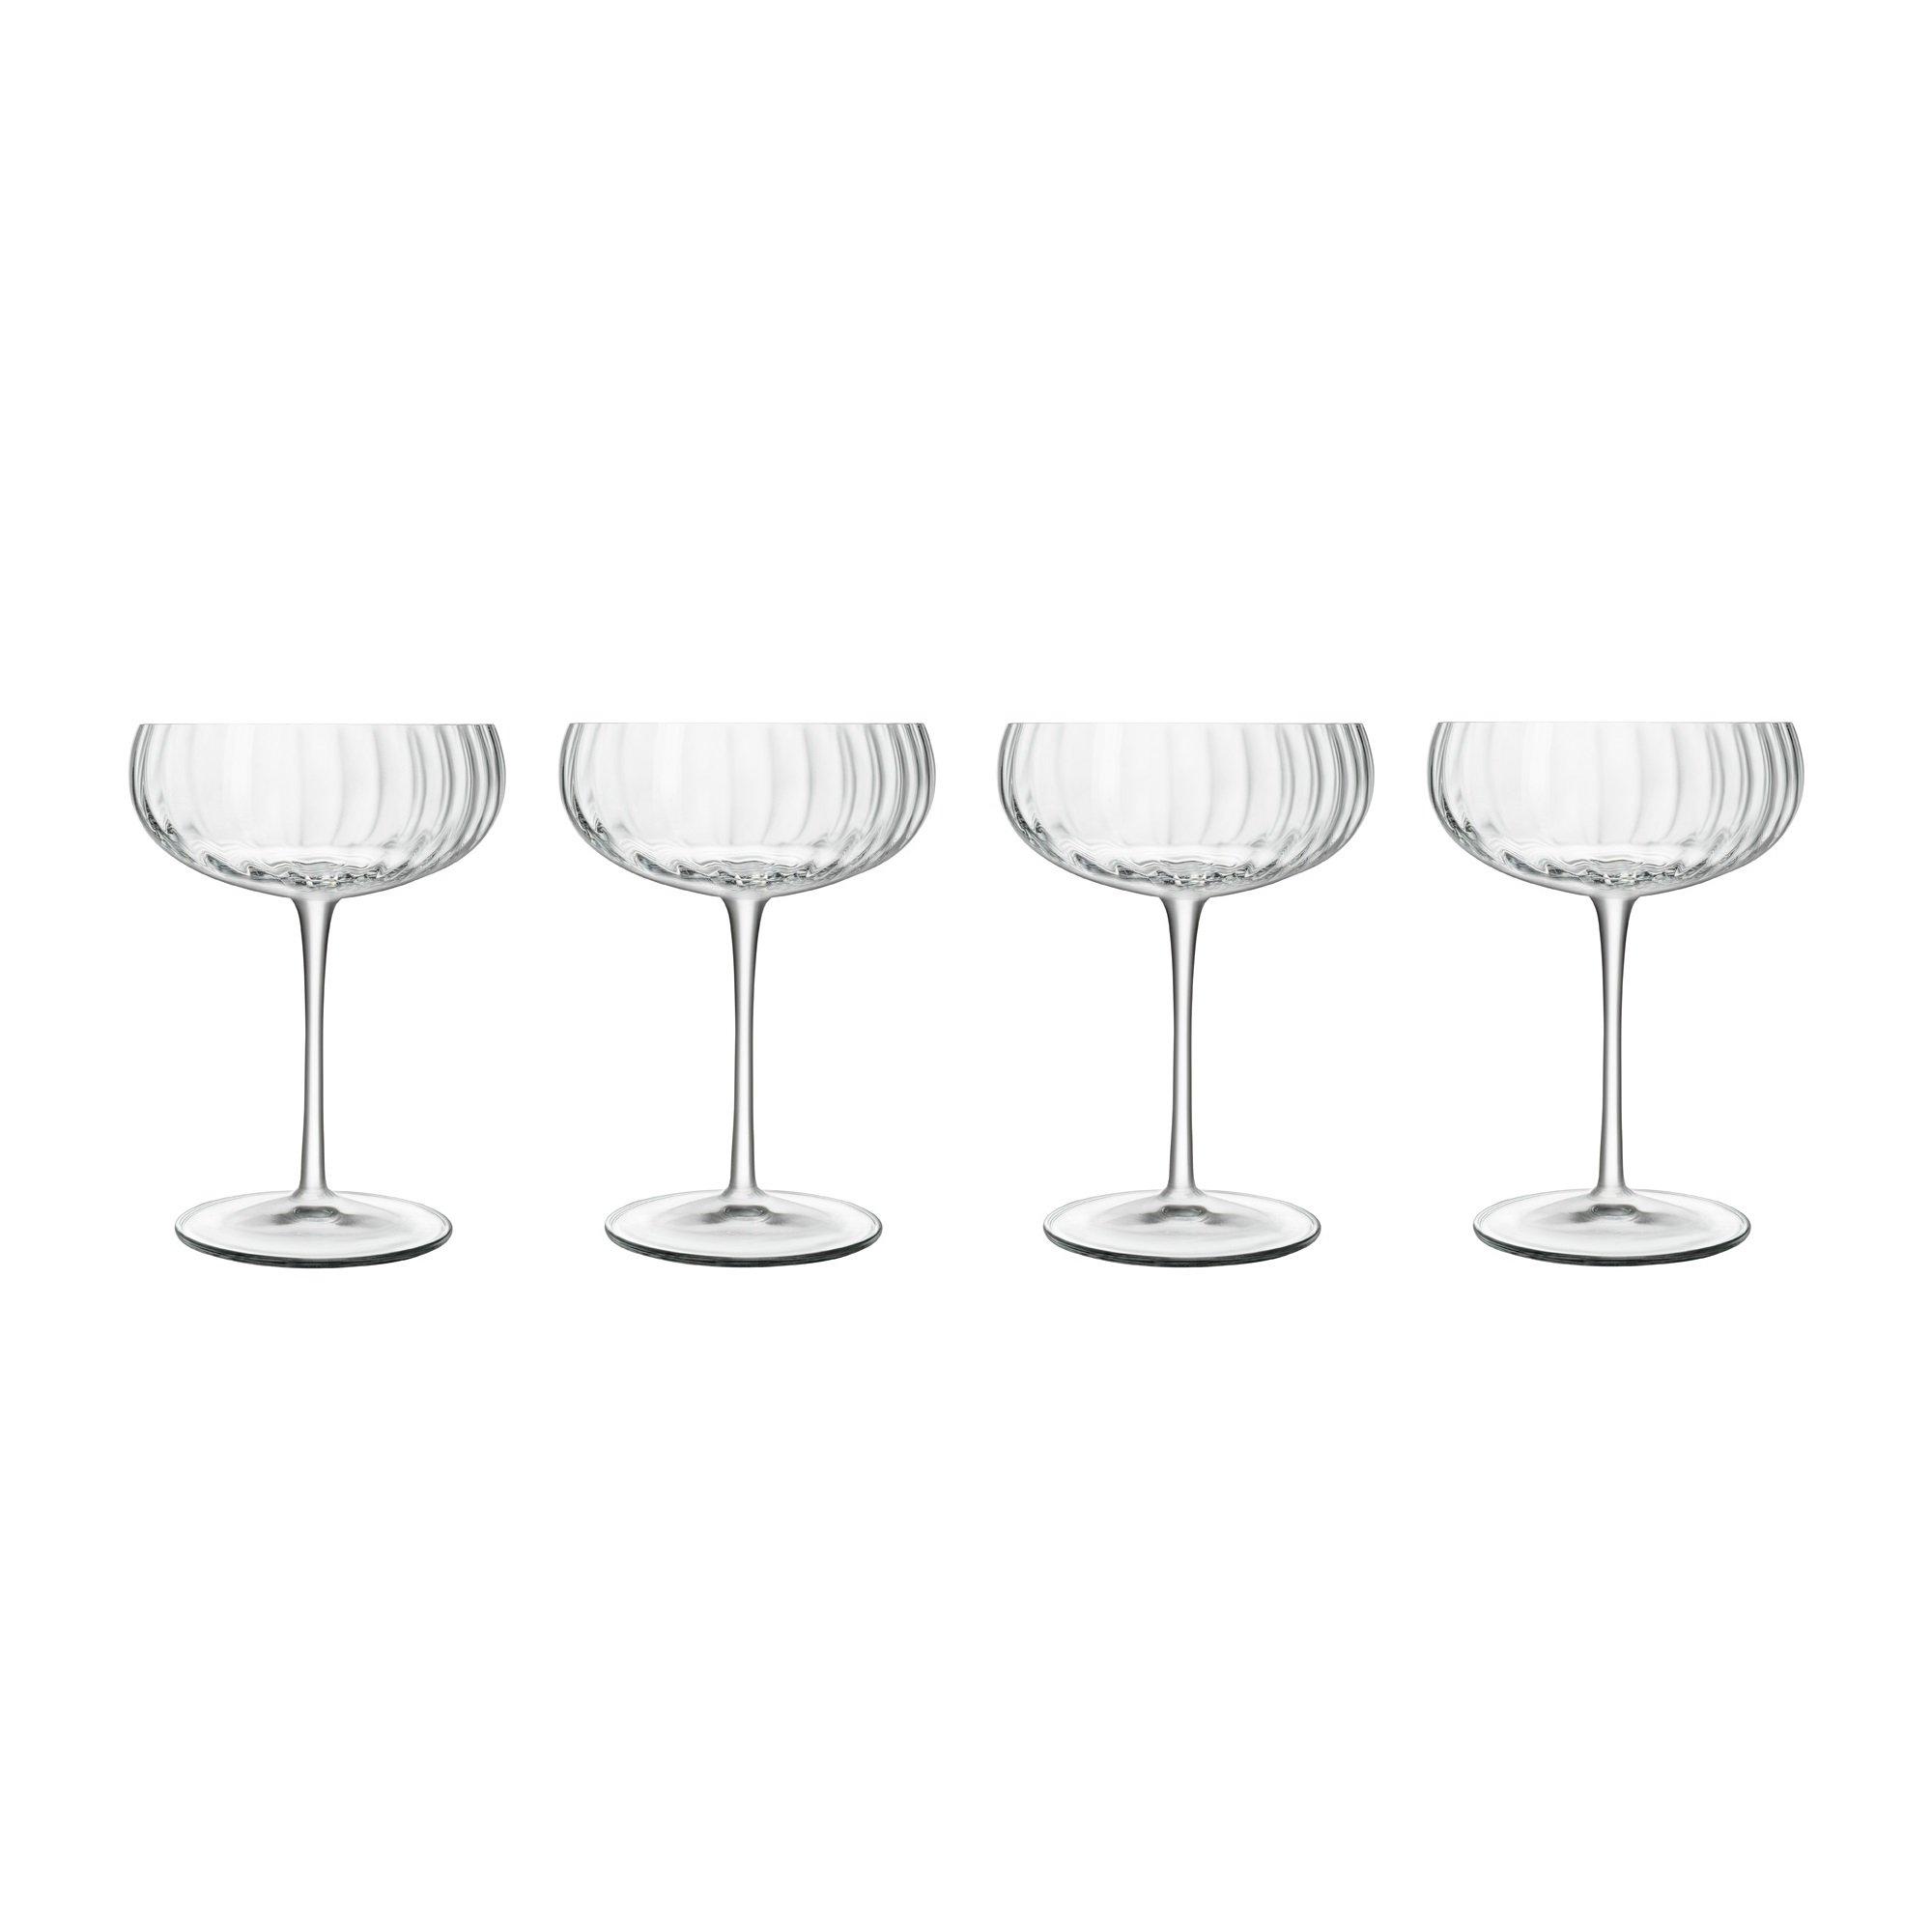 Photos - Glass Luigi Bormioli Optica Champagne Glasses - Dishwasher Safe, 300 ml - Pack of 4 